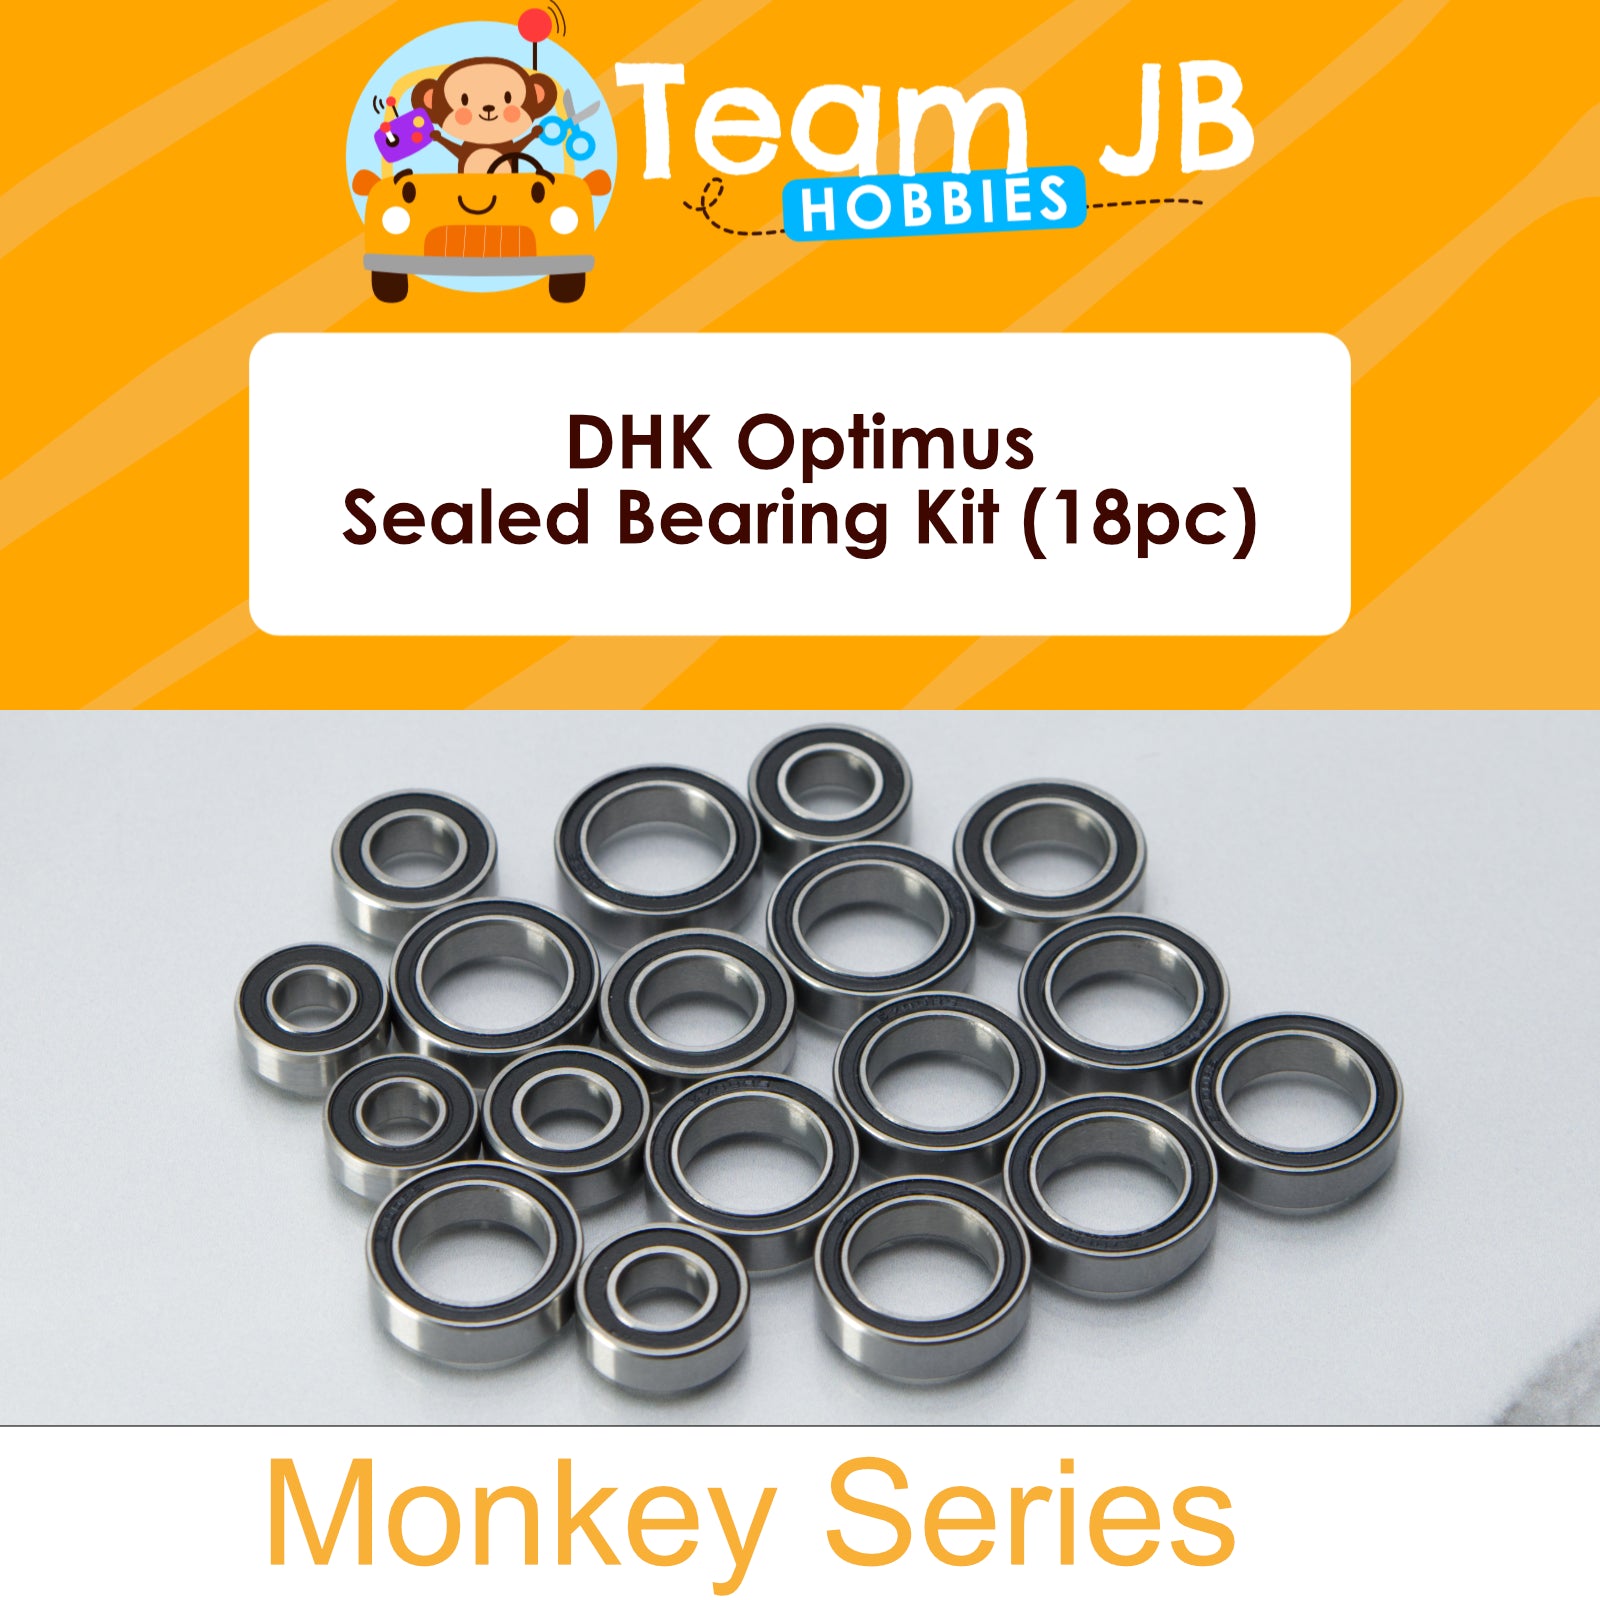 DHK Optimus - Sealed Bearing Kit